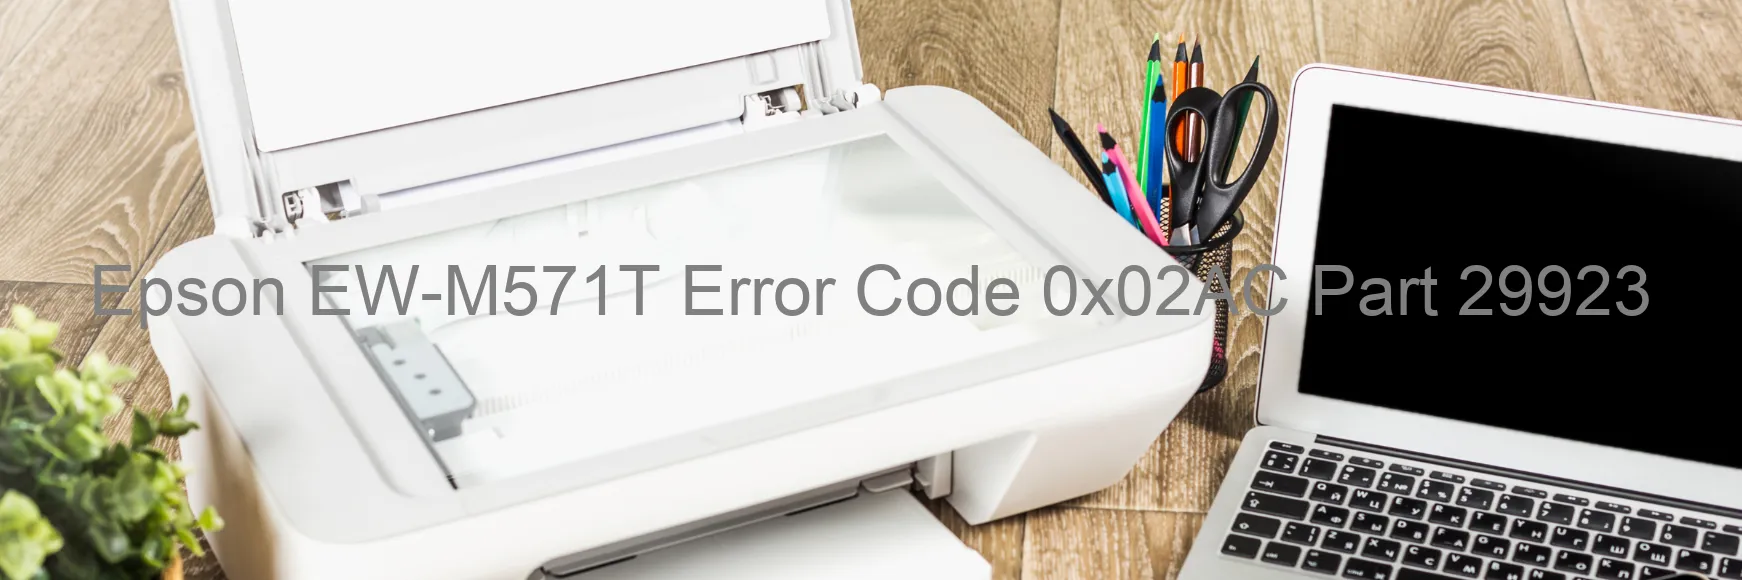 Epson EW-M571T Error 0x02AC